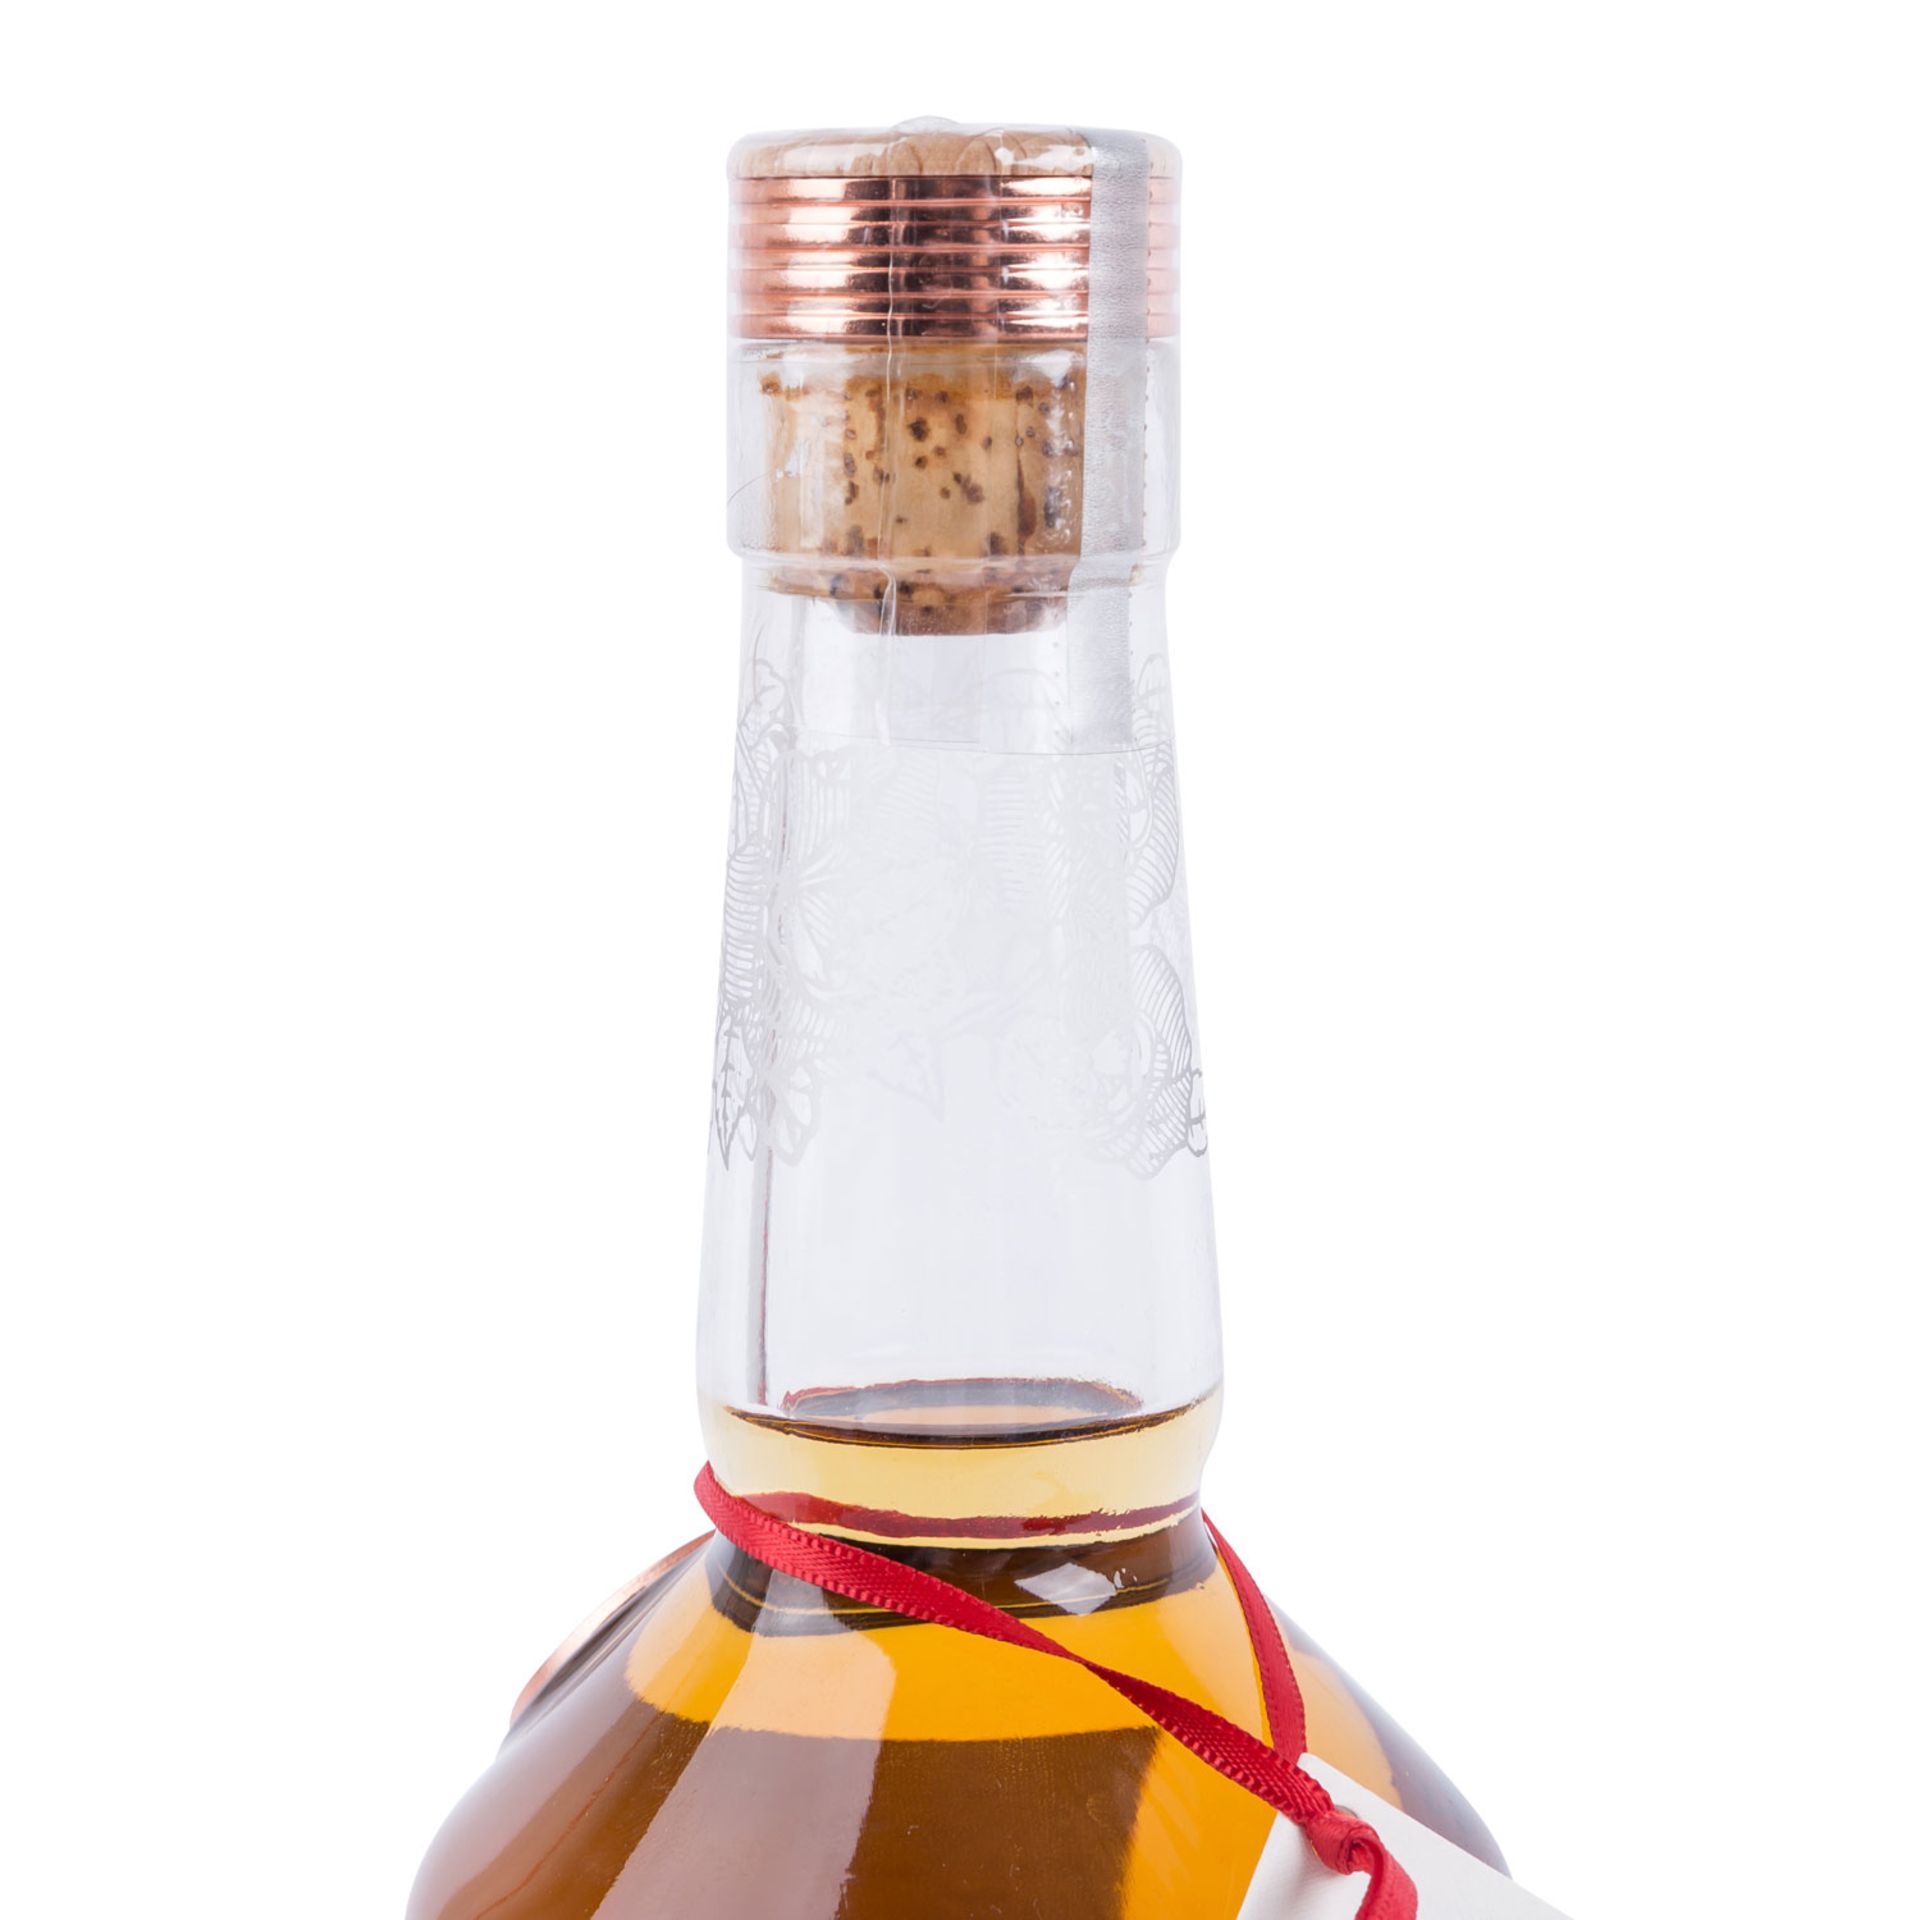 ROSEBANK 'Lowland Single Malt Scotch Whisky 'Aged 30 Years' 1990 - Image 4 of 4